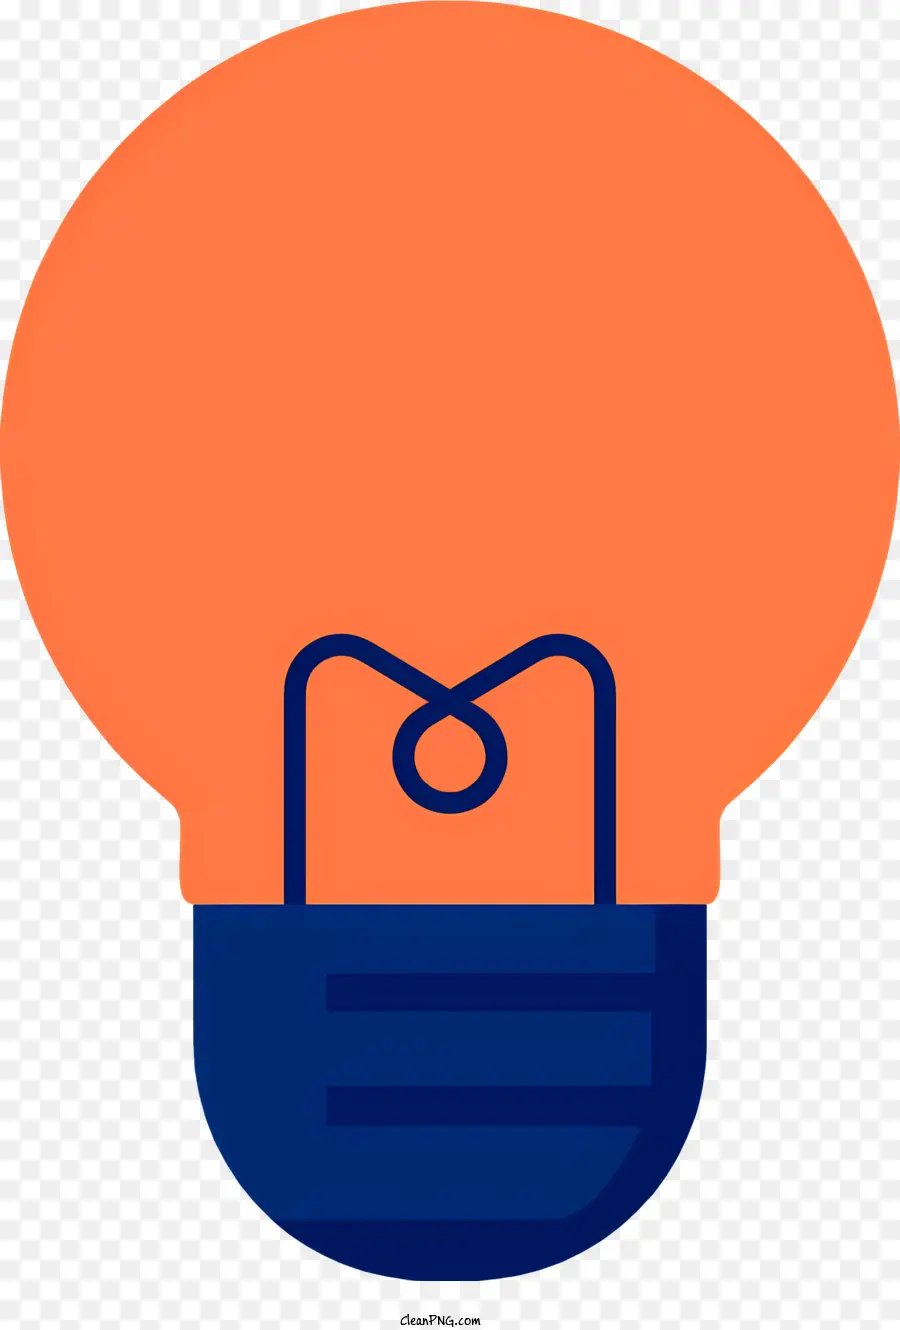 Biểu tượng bóng đèn màu xanh trong suốt Bóng đèn trong suốt Thiết kế hình chữ nhật mở hình chữ nhật - Bóng đèn màu xanh được bọc trong vỏ nhựa